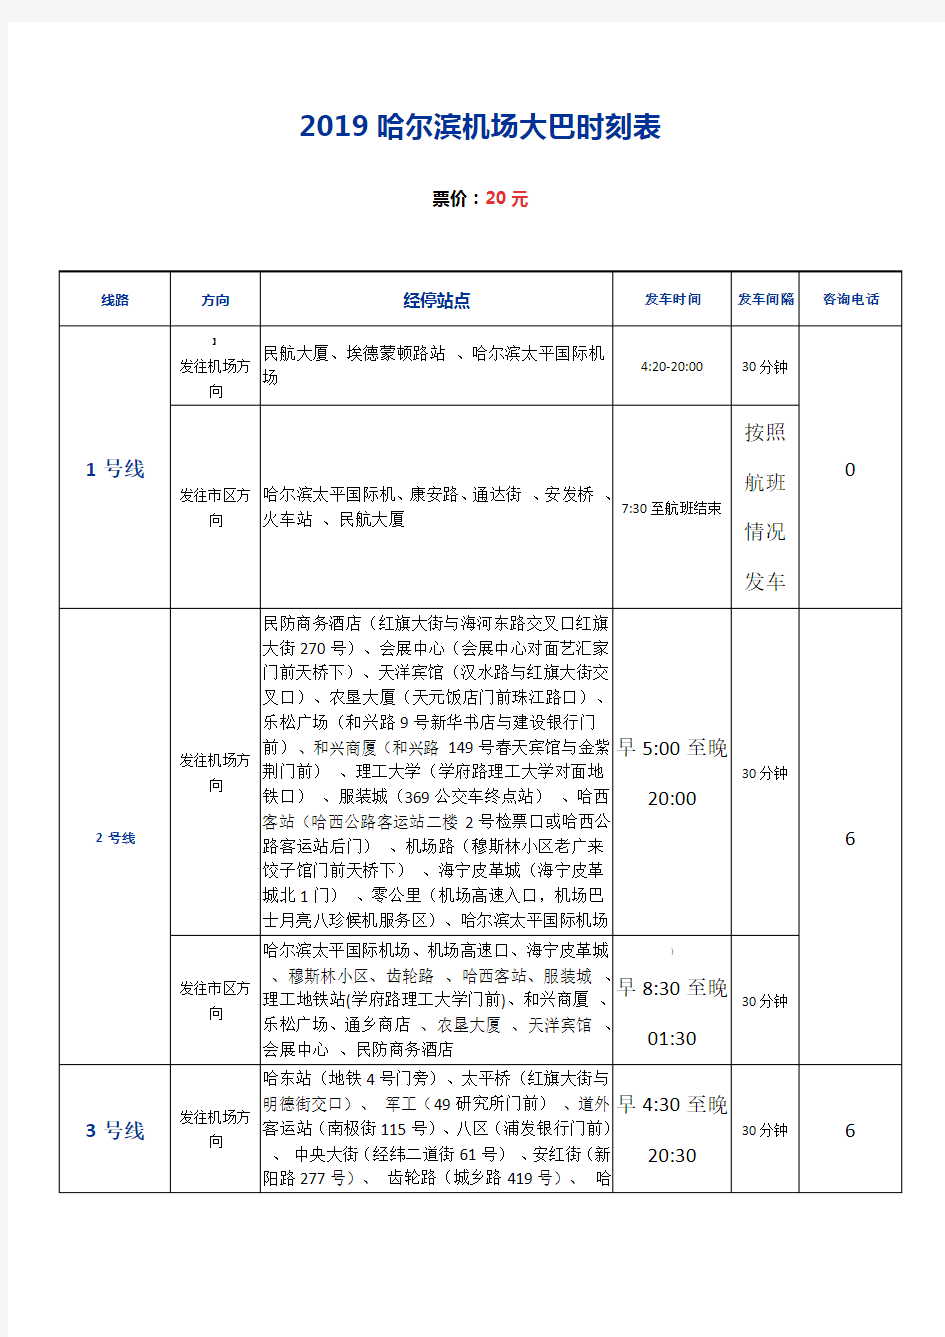 2019哈尔滨机场大巴时刻表(首末班时间、经停站点、票价)